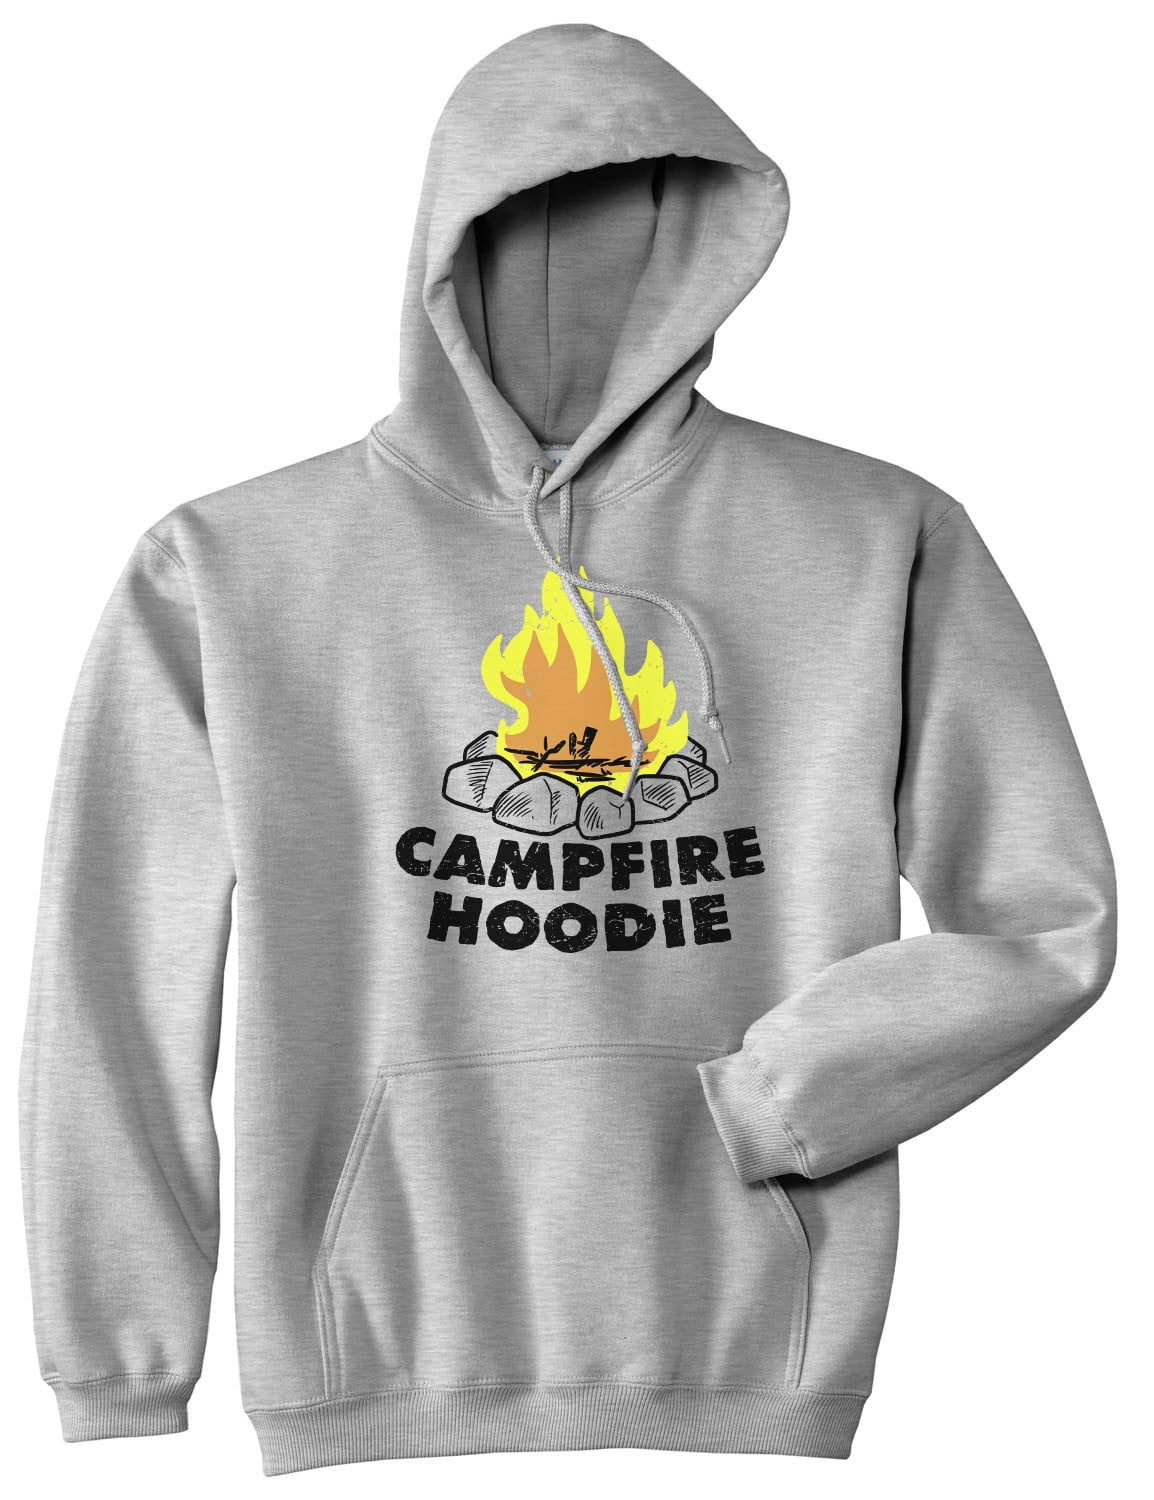 Road Trip Hoodie Sweet Motor Home,Camping hoodie Ethical Clothing Camping sweatshirt Adventure time Family Camping hoodie Happy Camper